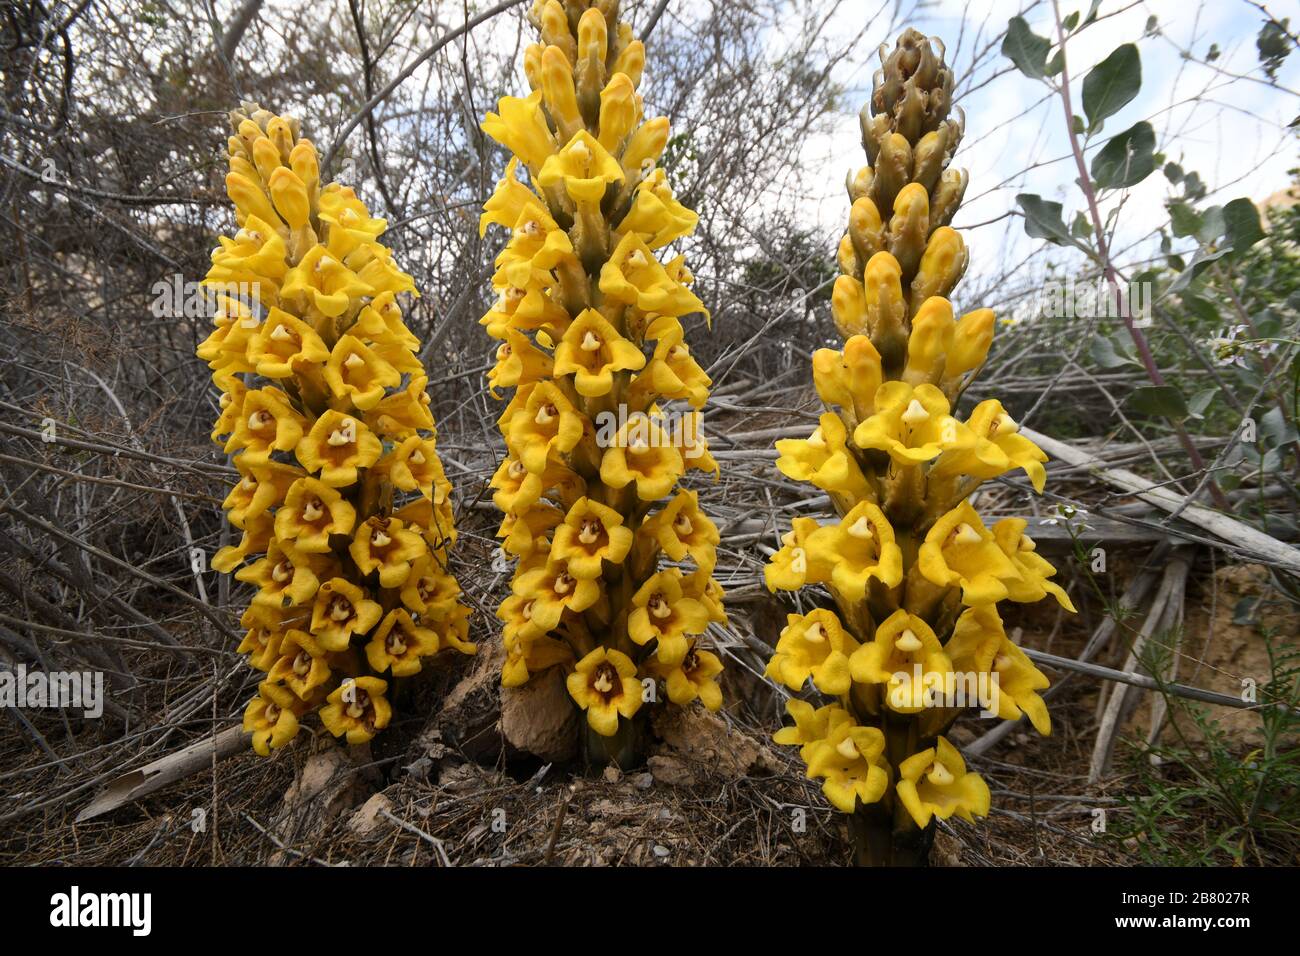 Gelb oder Wüste broomrape, Cistanche tubulosa. Diese Pflanze ist eine parasitäre Mitglied des broomrape Familie. In der Wüste Negev, Israel fotografiert. Stockfoto